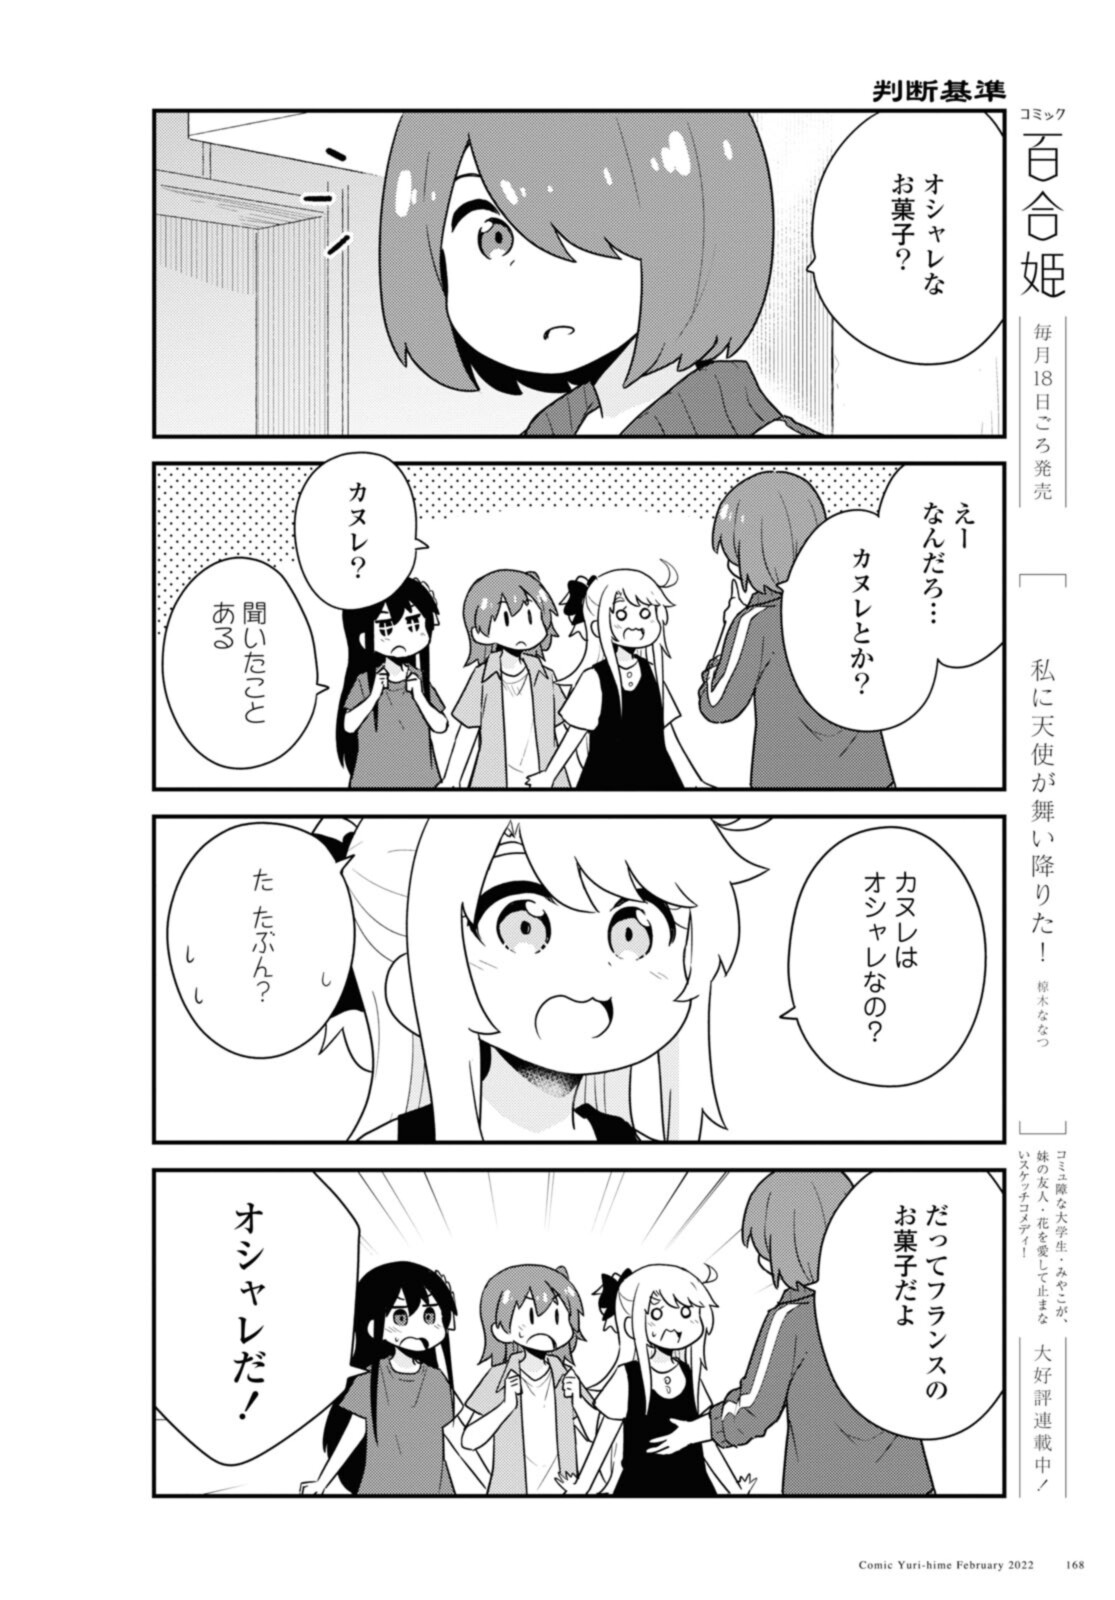 Watashi ni Tenshi ga Maiorita! - Chapter 92 - Page 4